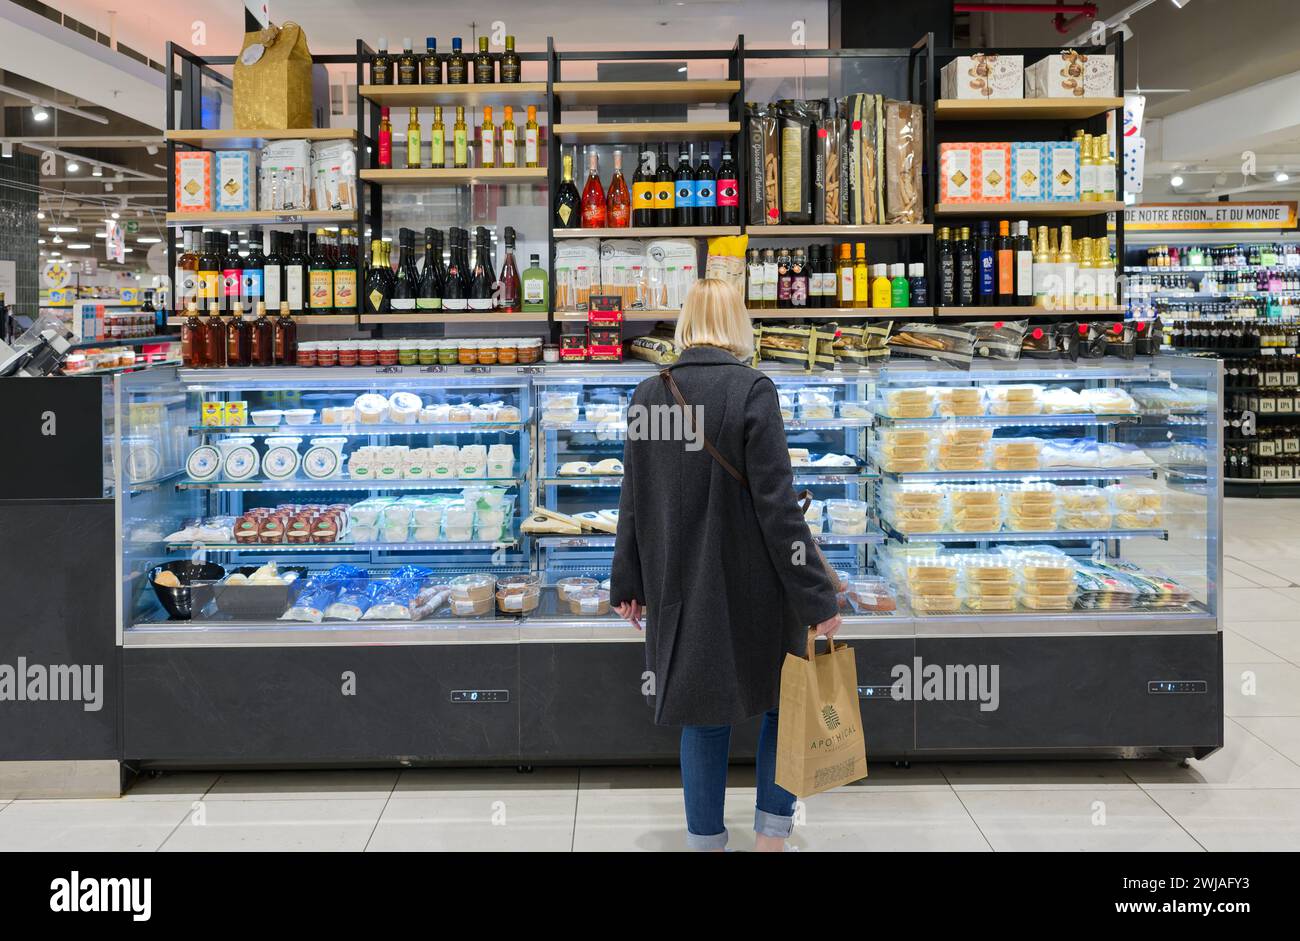 Femme dans une section d'un supermarché Monoprix dans le centre commercial Cap 3000 à Saint-Laurent-du-Var (sud-est de la France). Fromage et produits frais Banque D'Images